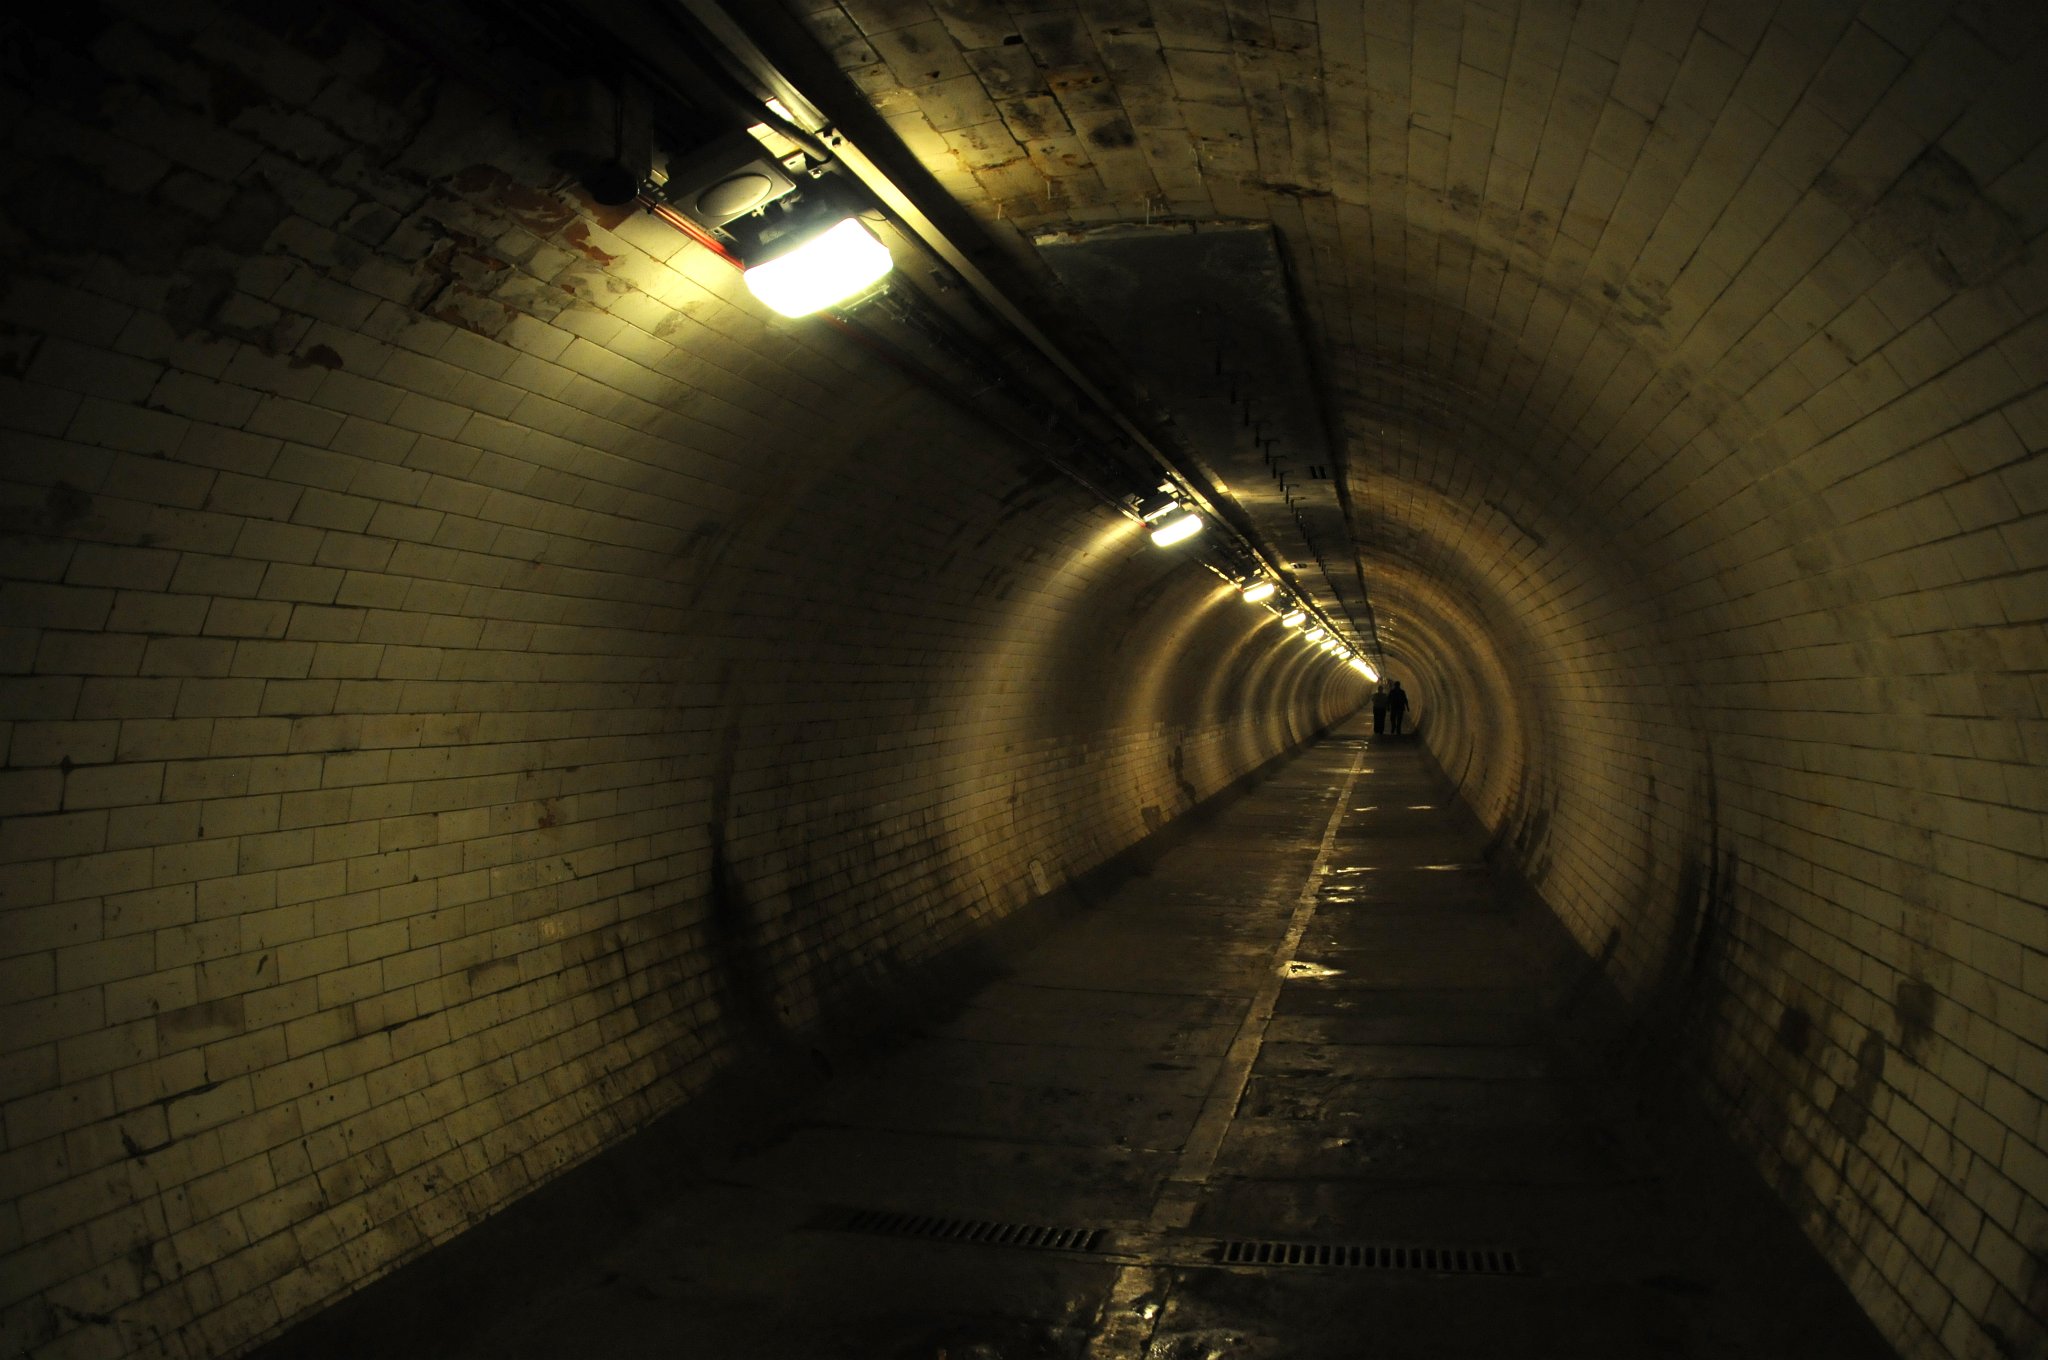 DSC_4321_1.jpg - Tunel sám je 370.2 m (1217 ft) dlouhý, je v hloubce 15,2 m (50 ft) a má vnitřní průměr asi 9 stop (2,7 m). Celý je obložen 200,000 bílými glazovanými dlaždicemi.